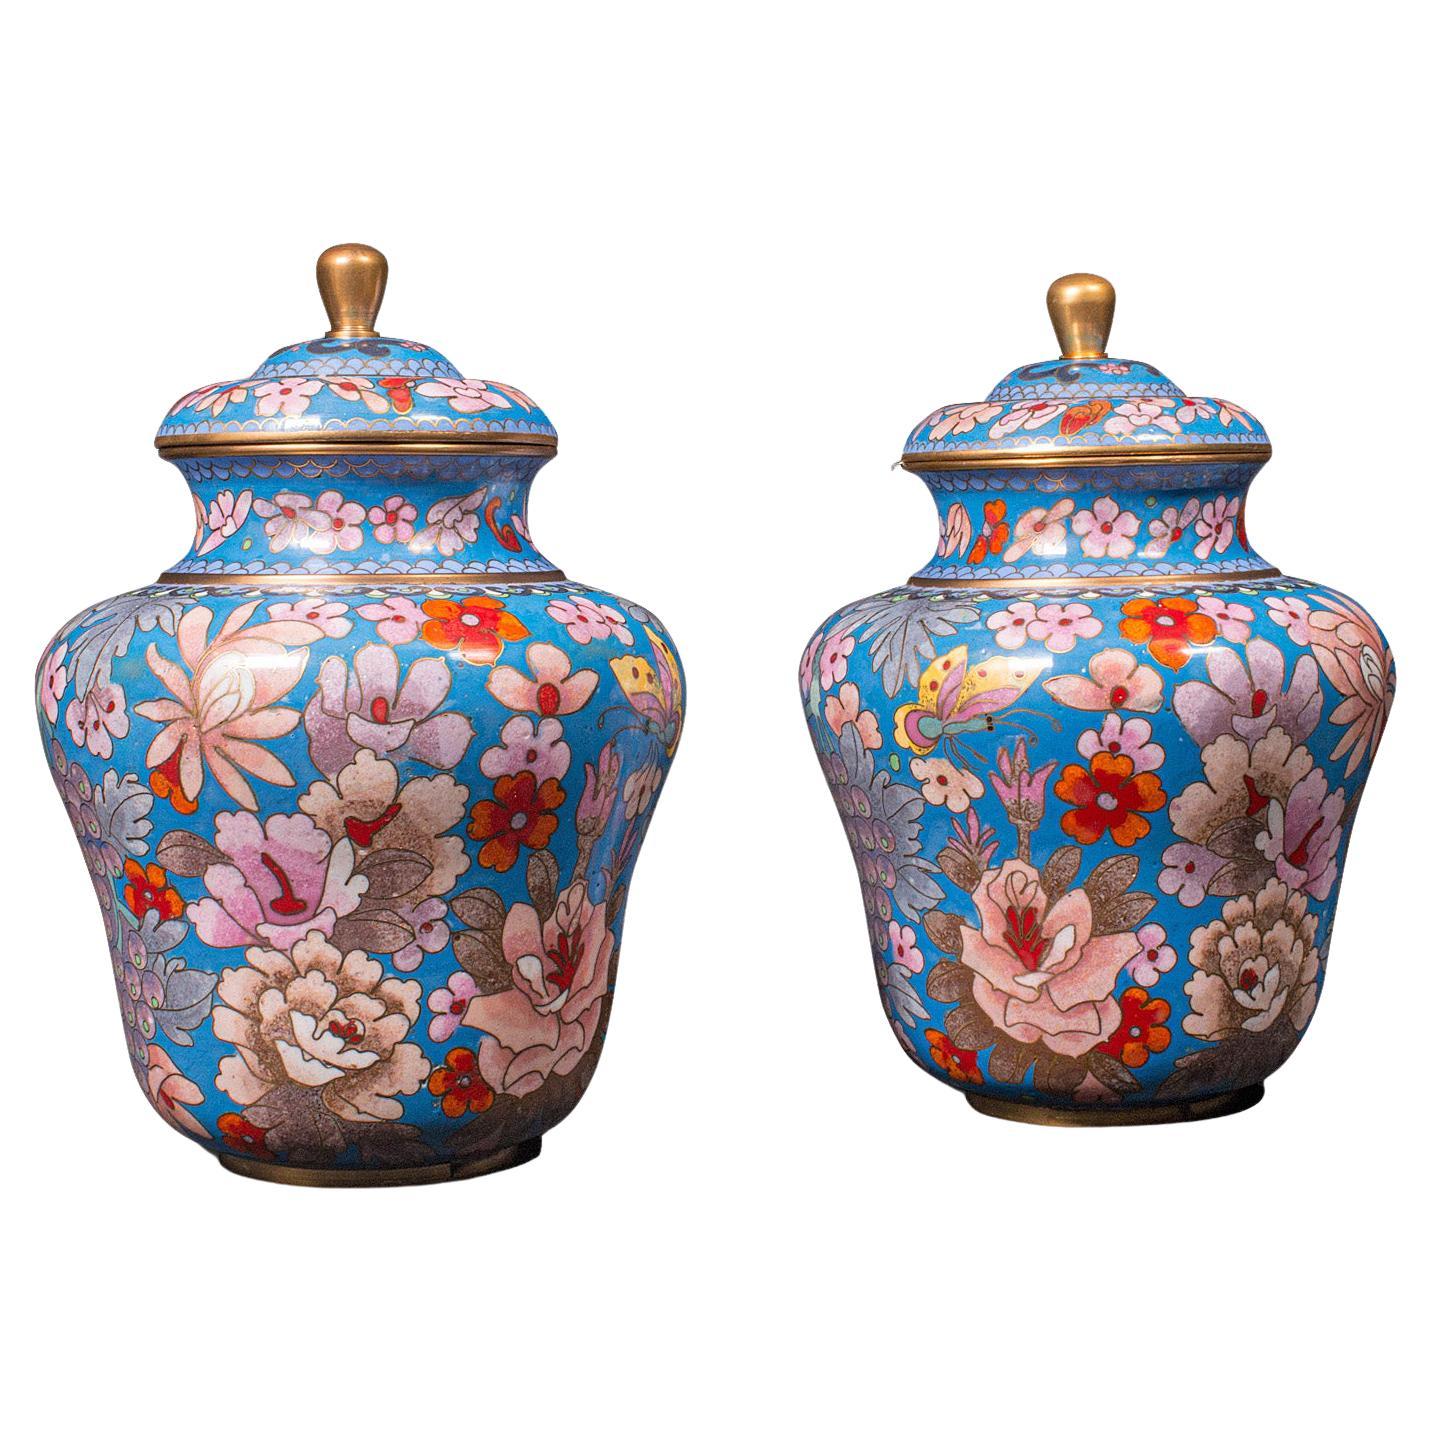 Pair of Antique Cloisonne Spice Jars, English Ceramic, Decorative Pot, Victorian For Sale